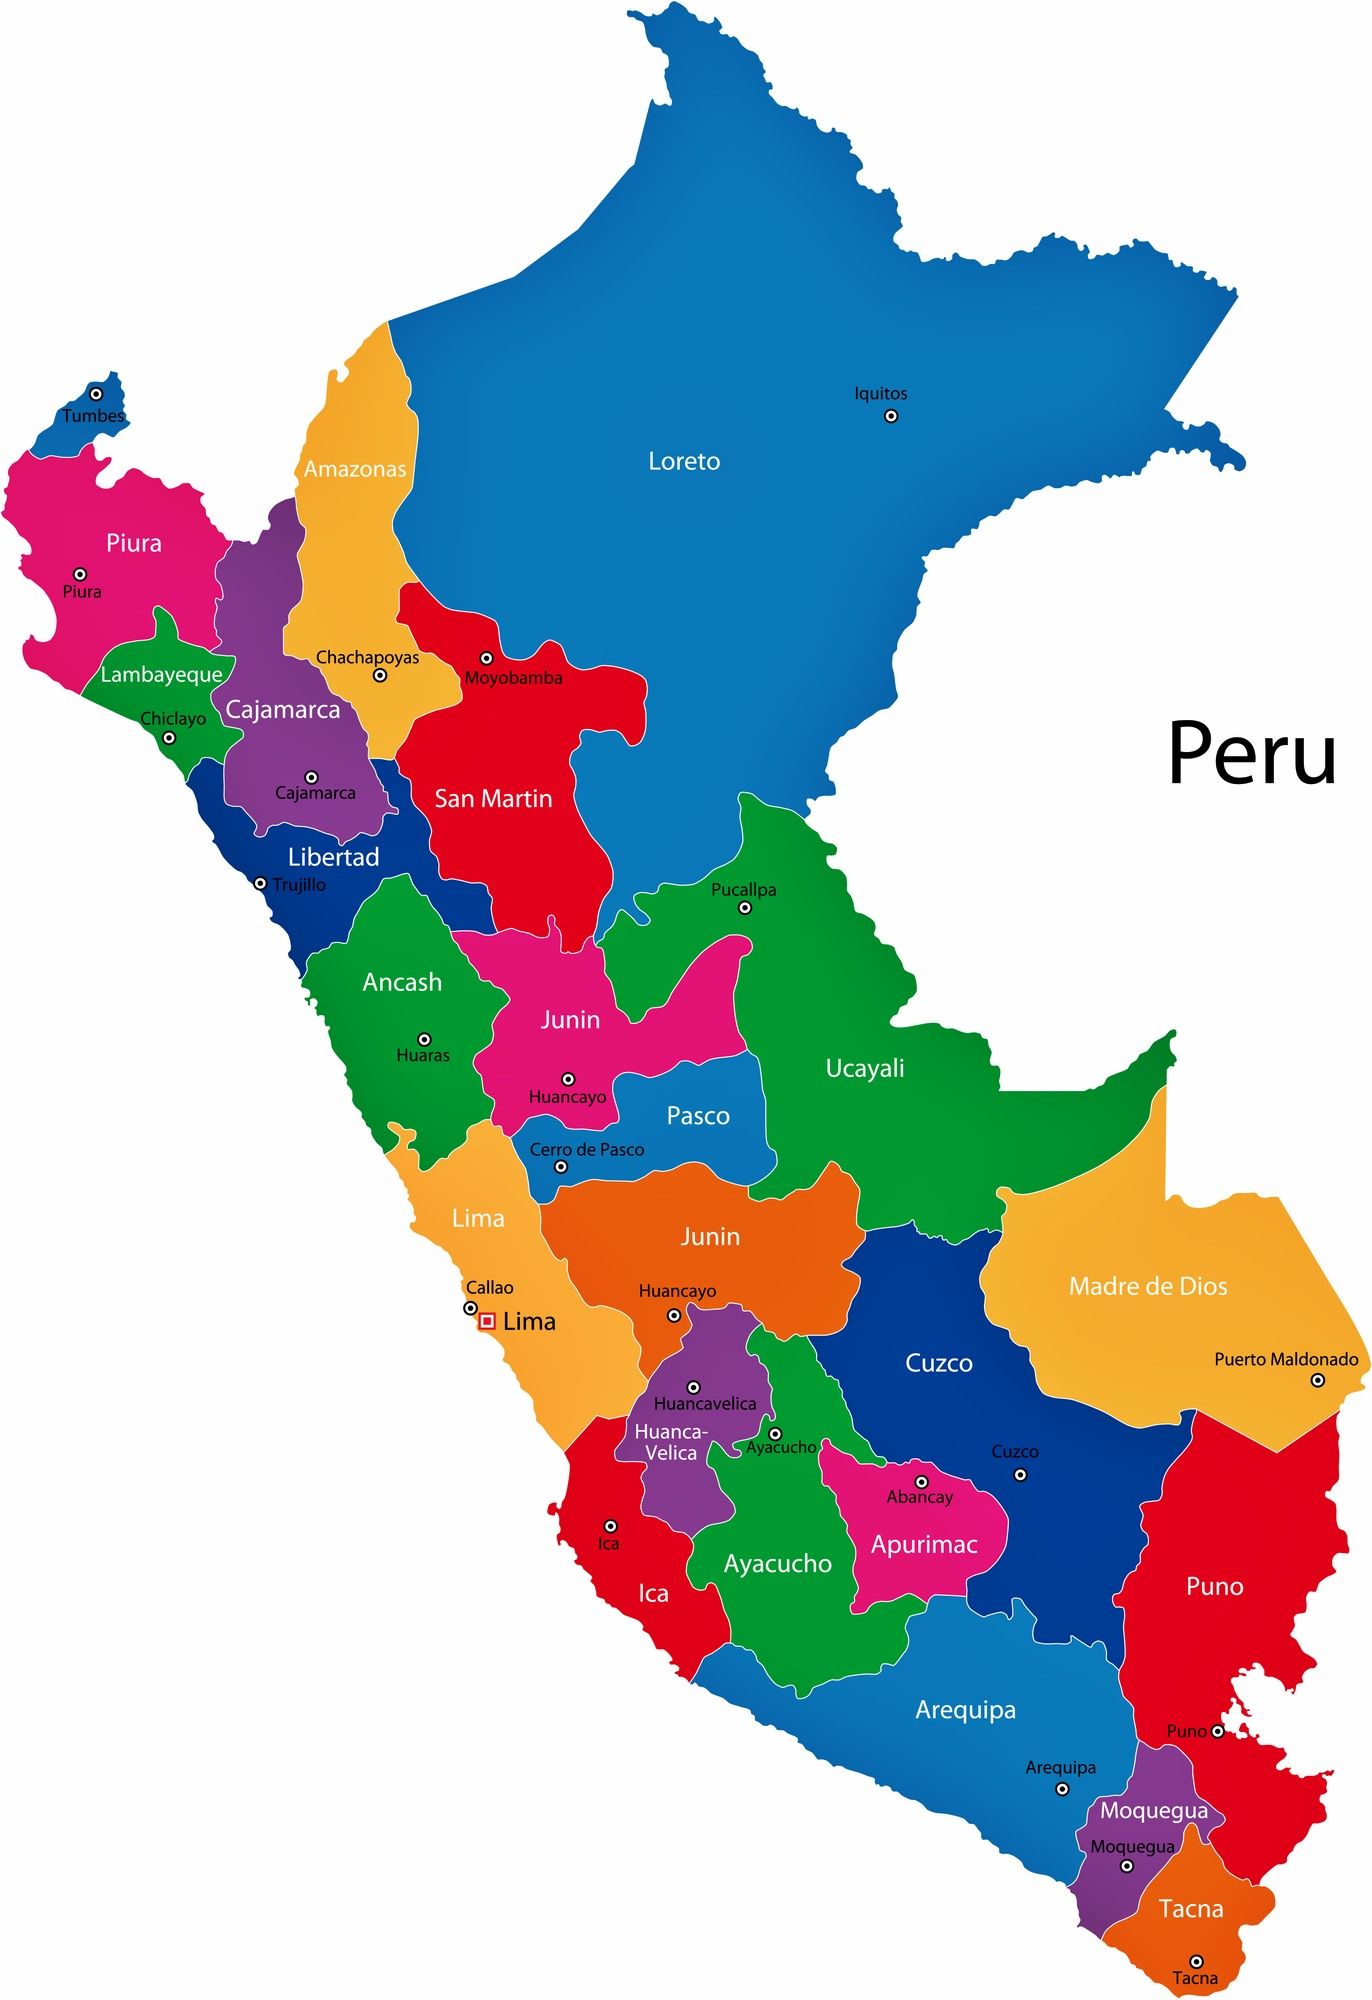 Perú futura Superpotencia